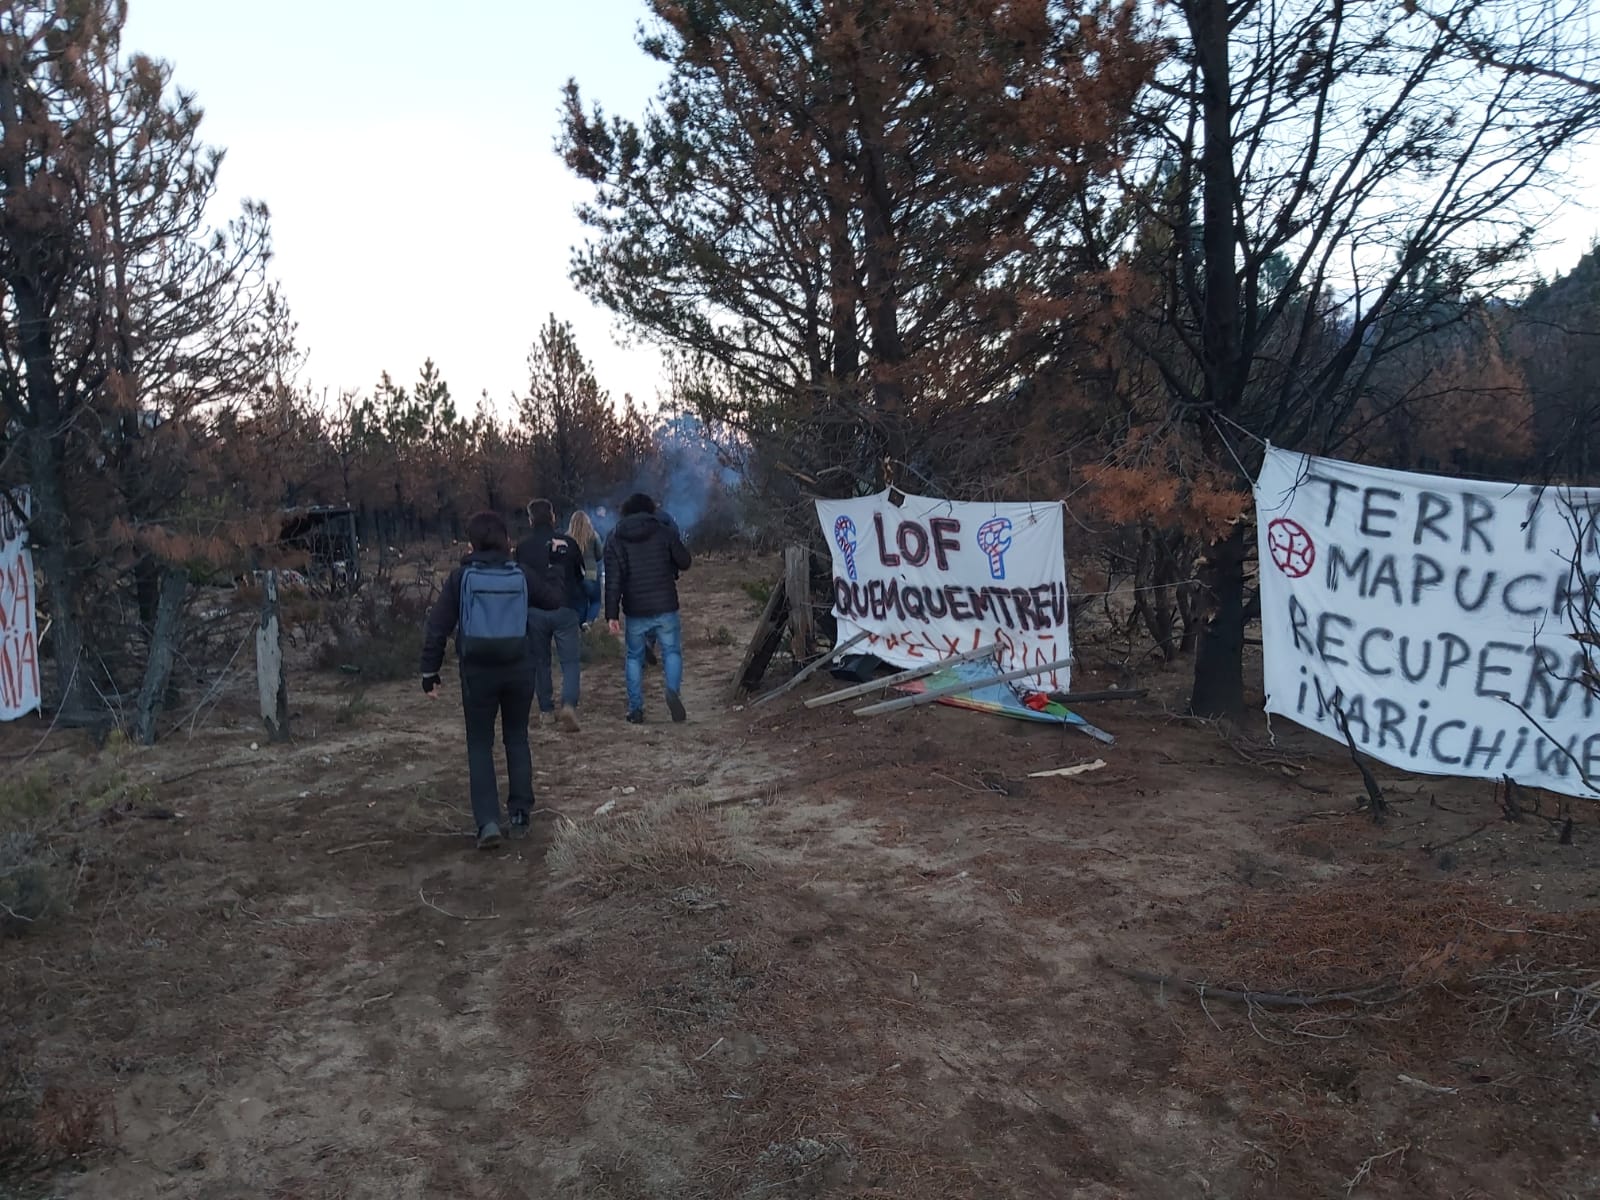 El 18 de septiembre pasado, un grupo de personas que se identificó como membros de la comunidad mapuche Quemquemtreu irrumpió en un campo, ubicado en Cuesta del Ternero, a pocos kilómetros de El Bolsón. (foto de archivo)